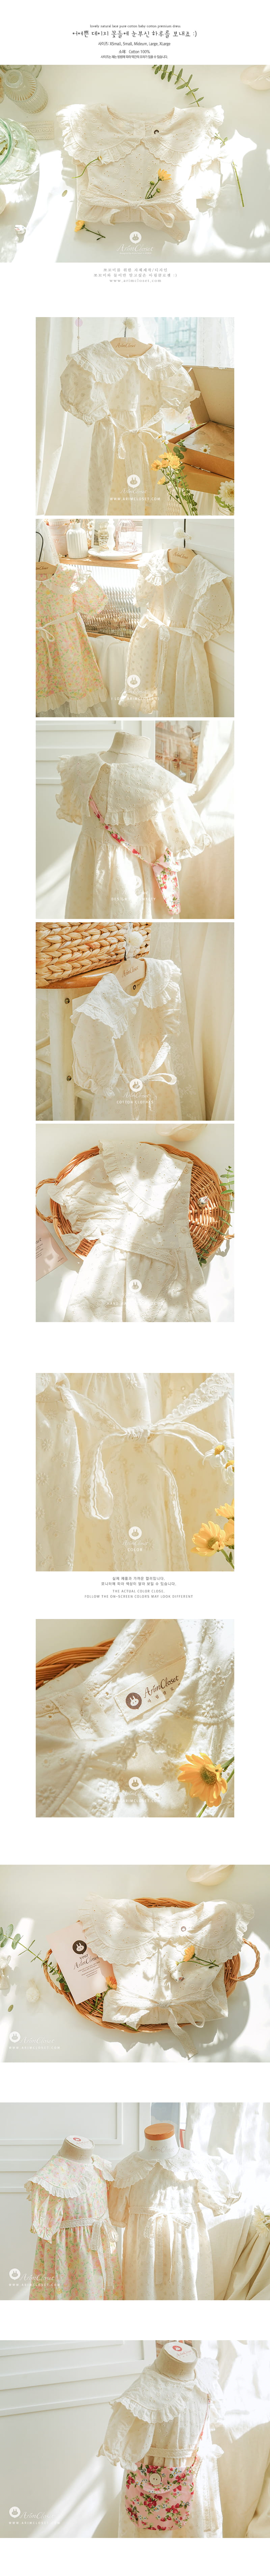 Arim Closet - Korean Baby Fashion - #onlinebabyshop - Lovely Natural Pure Premium One-piece - 2